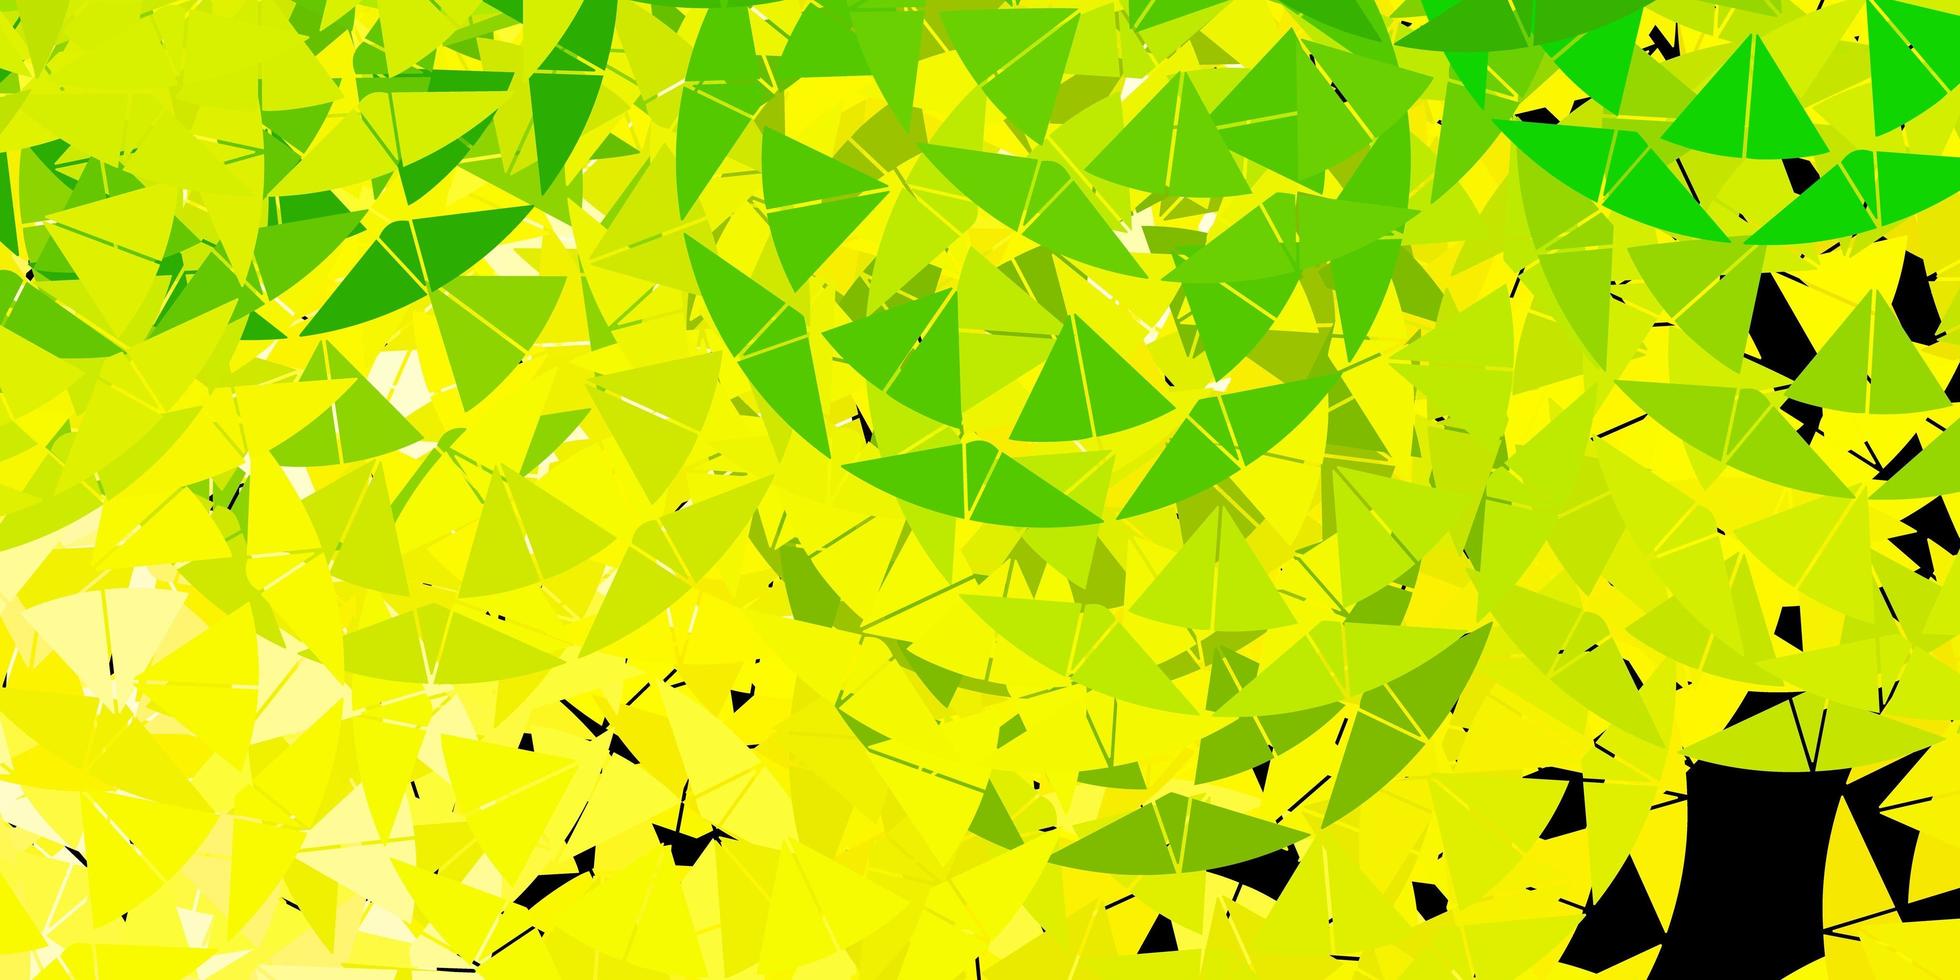 de fundo vector verde e amarelo claro com triângulos.